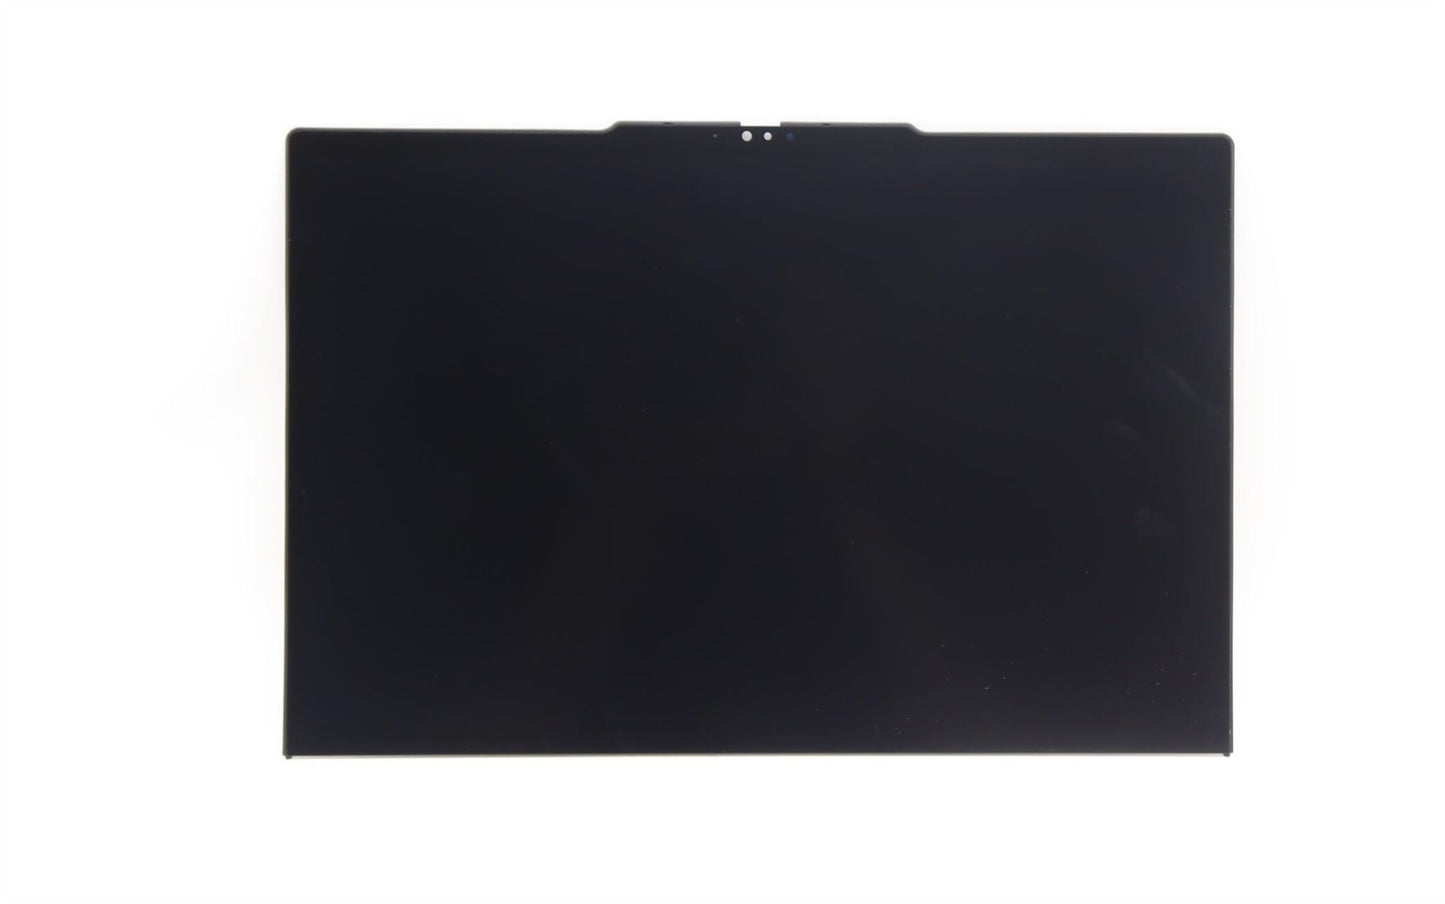 Lenovo Yoga X13 Gen 4 LCD Screen Display Panel 13.3 WUXGA IPS 5M11L64795